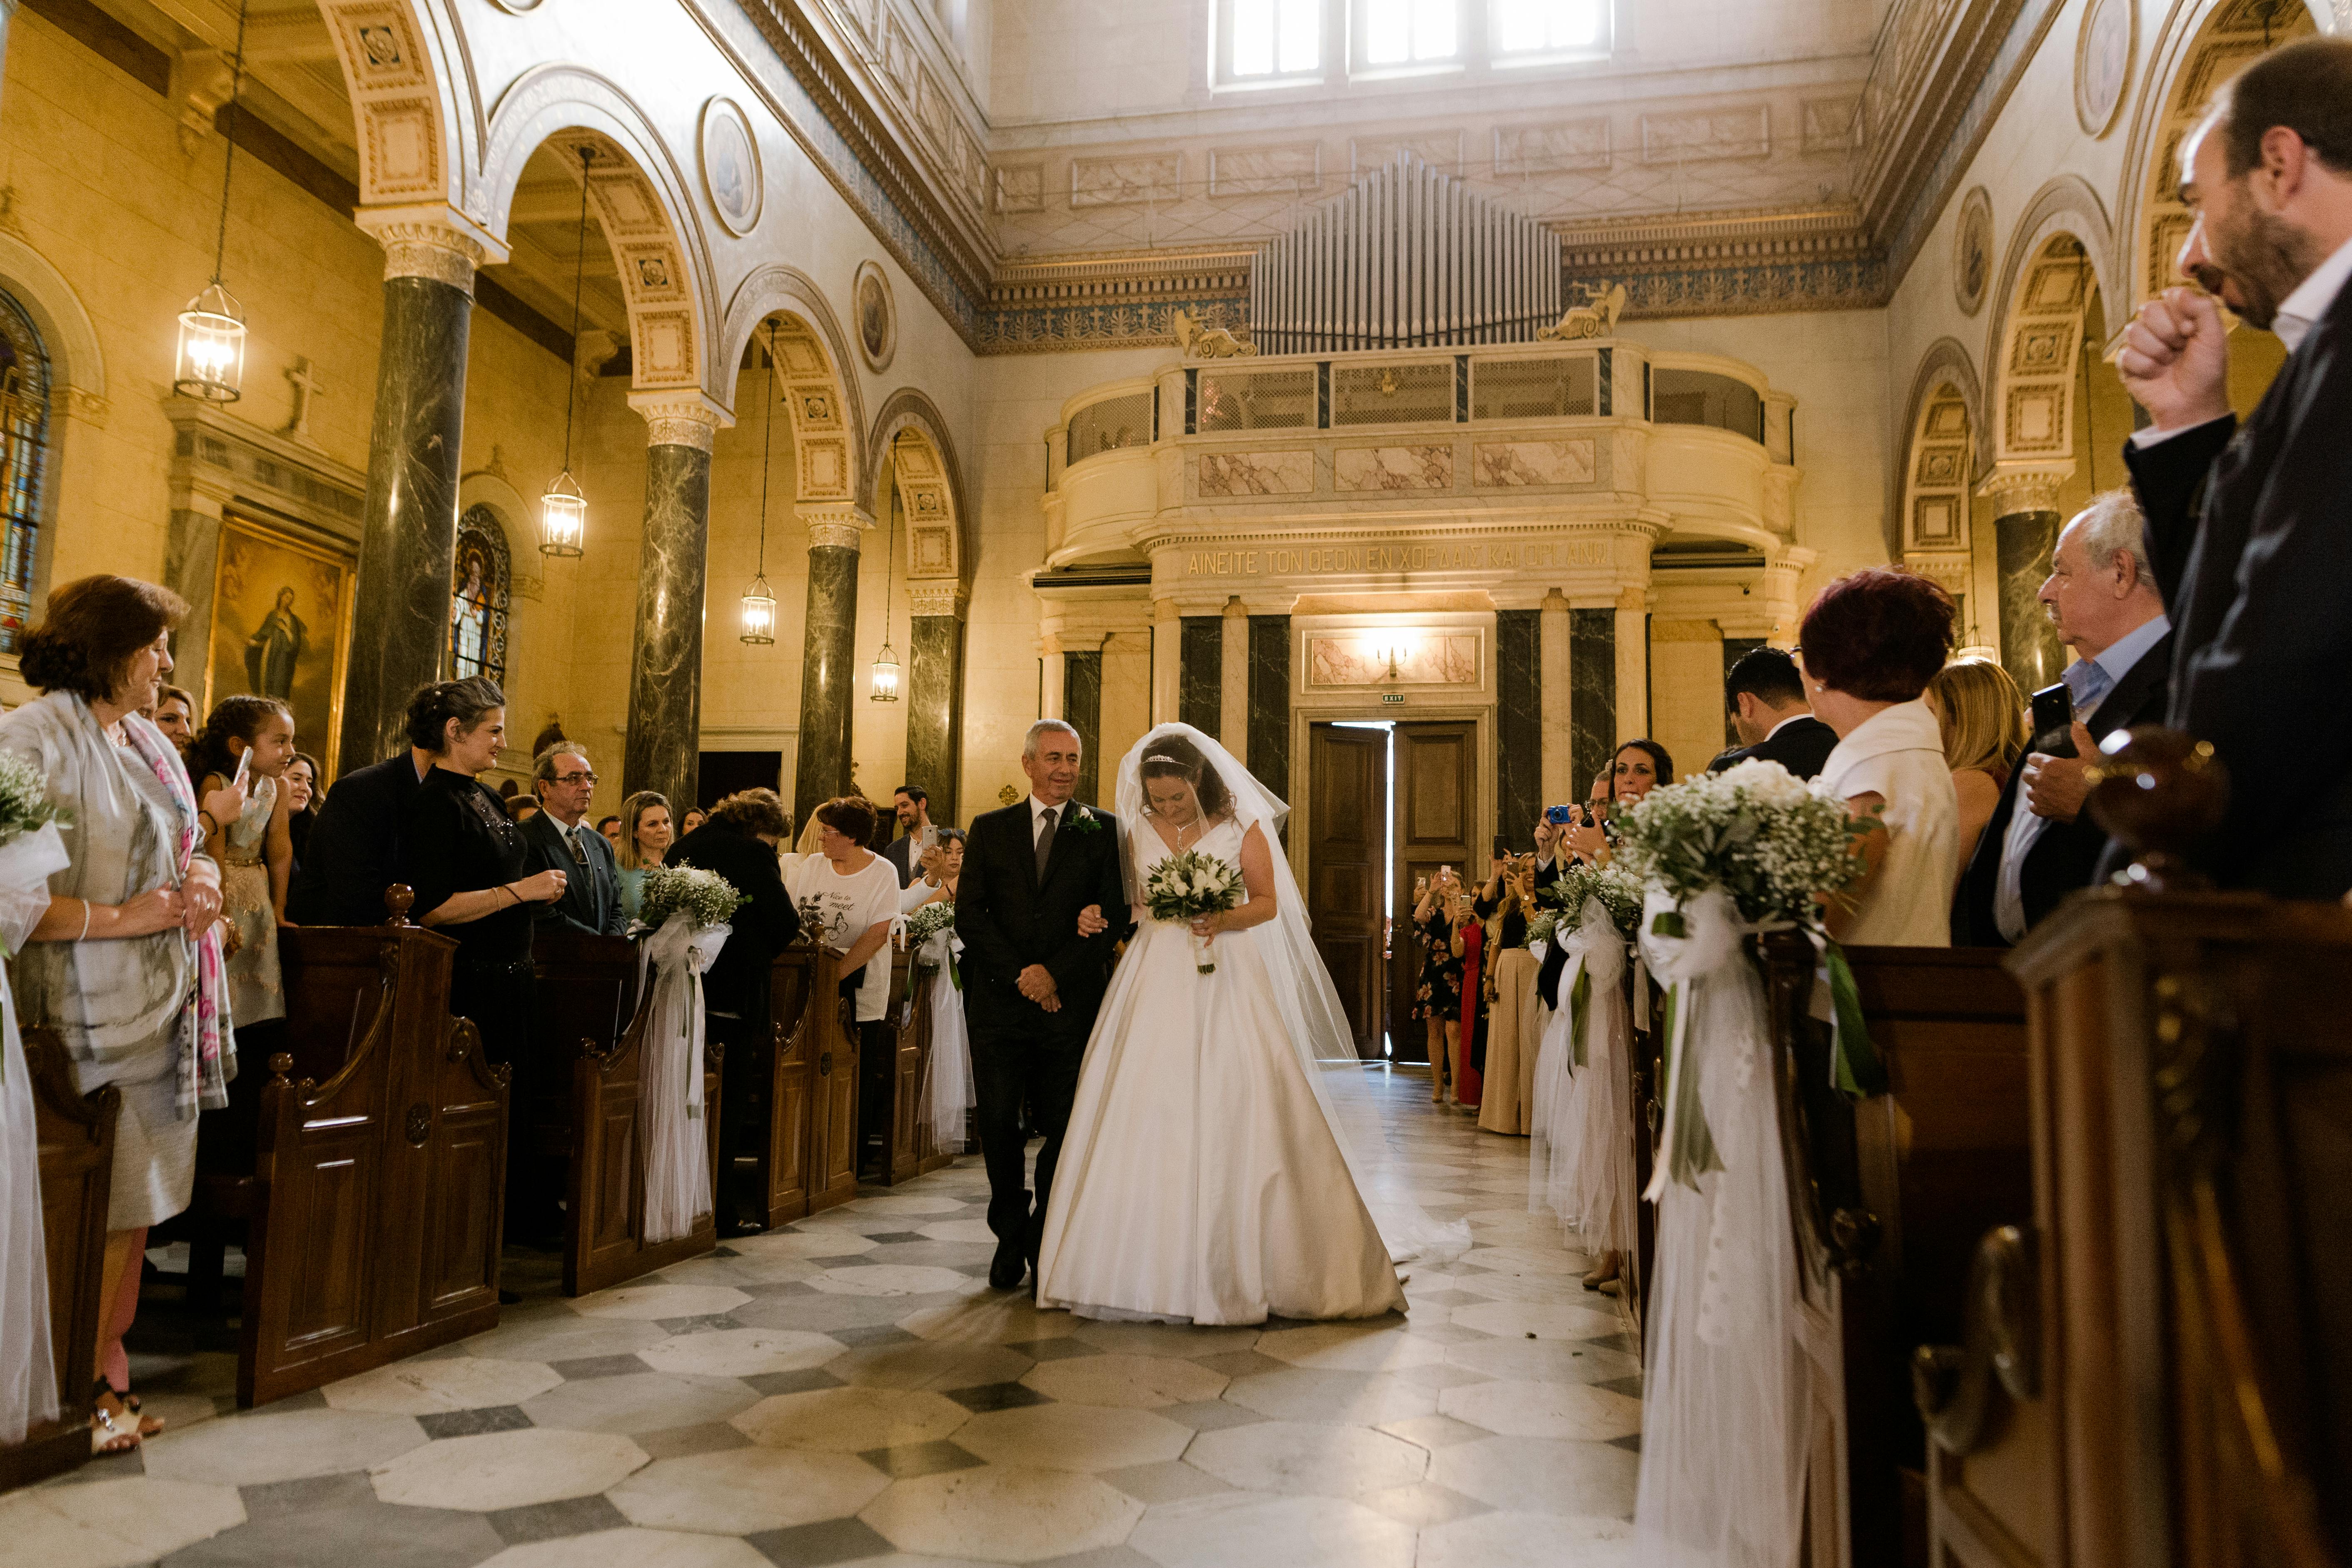 Un homme accompagne une mariée dans l'allée d'une église | Source : Pexels